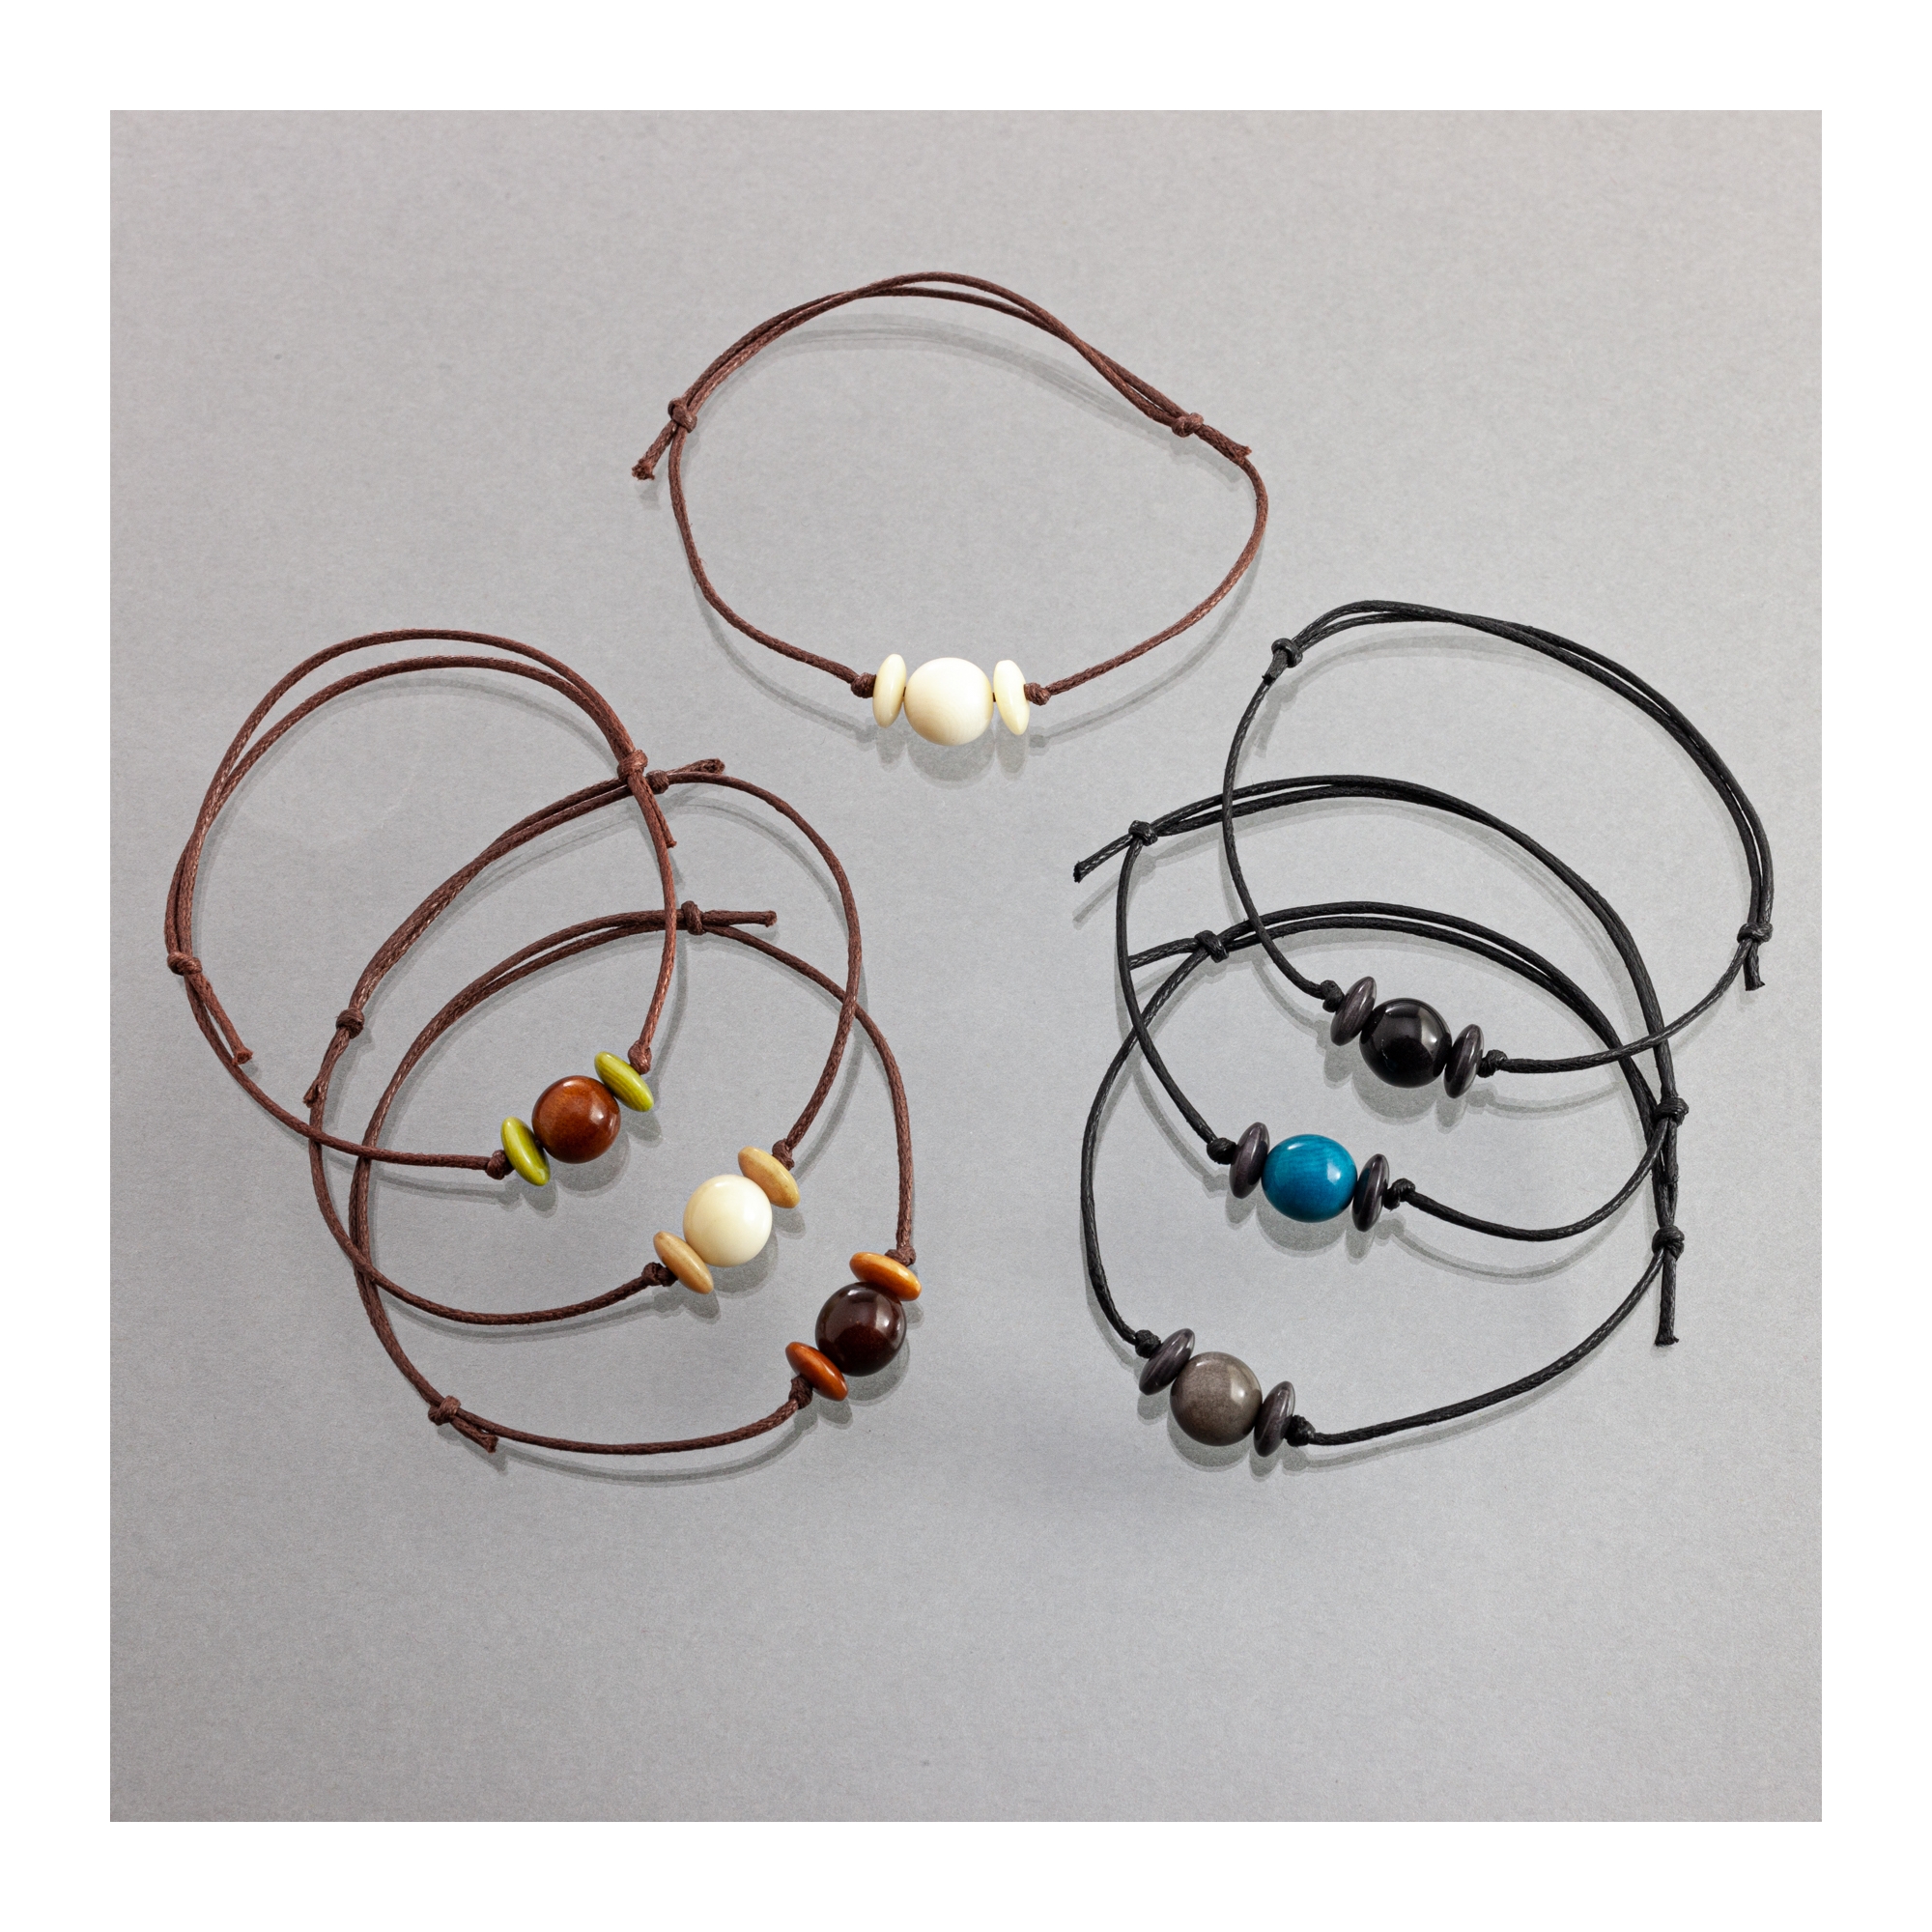 Bijoux Enfant - Bracelets, accessoires - Idea Enfant (perle ronde